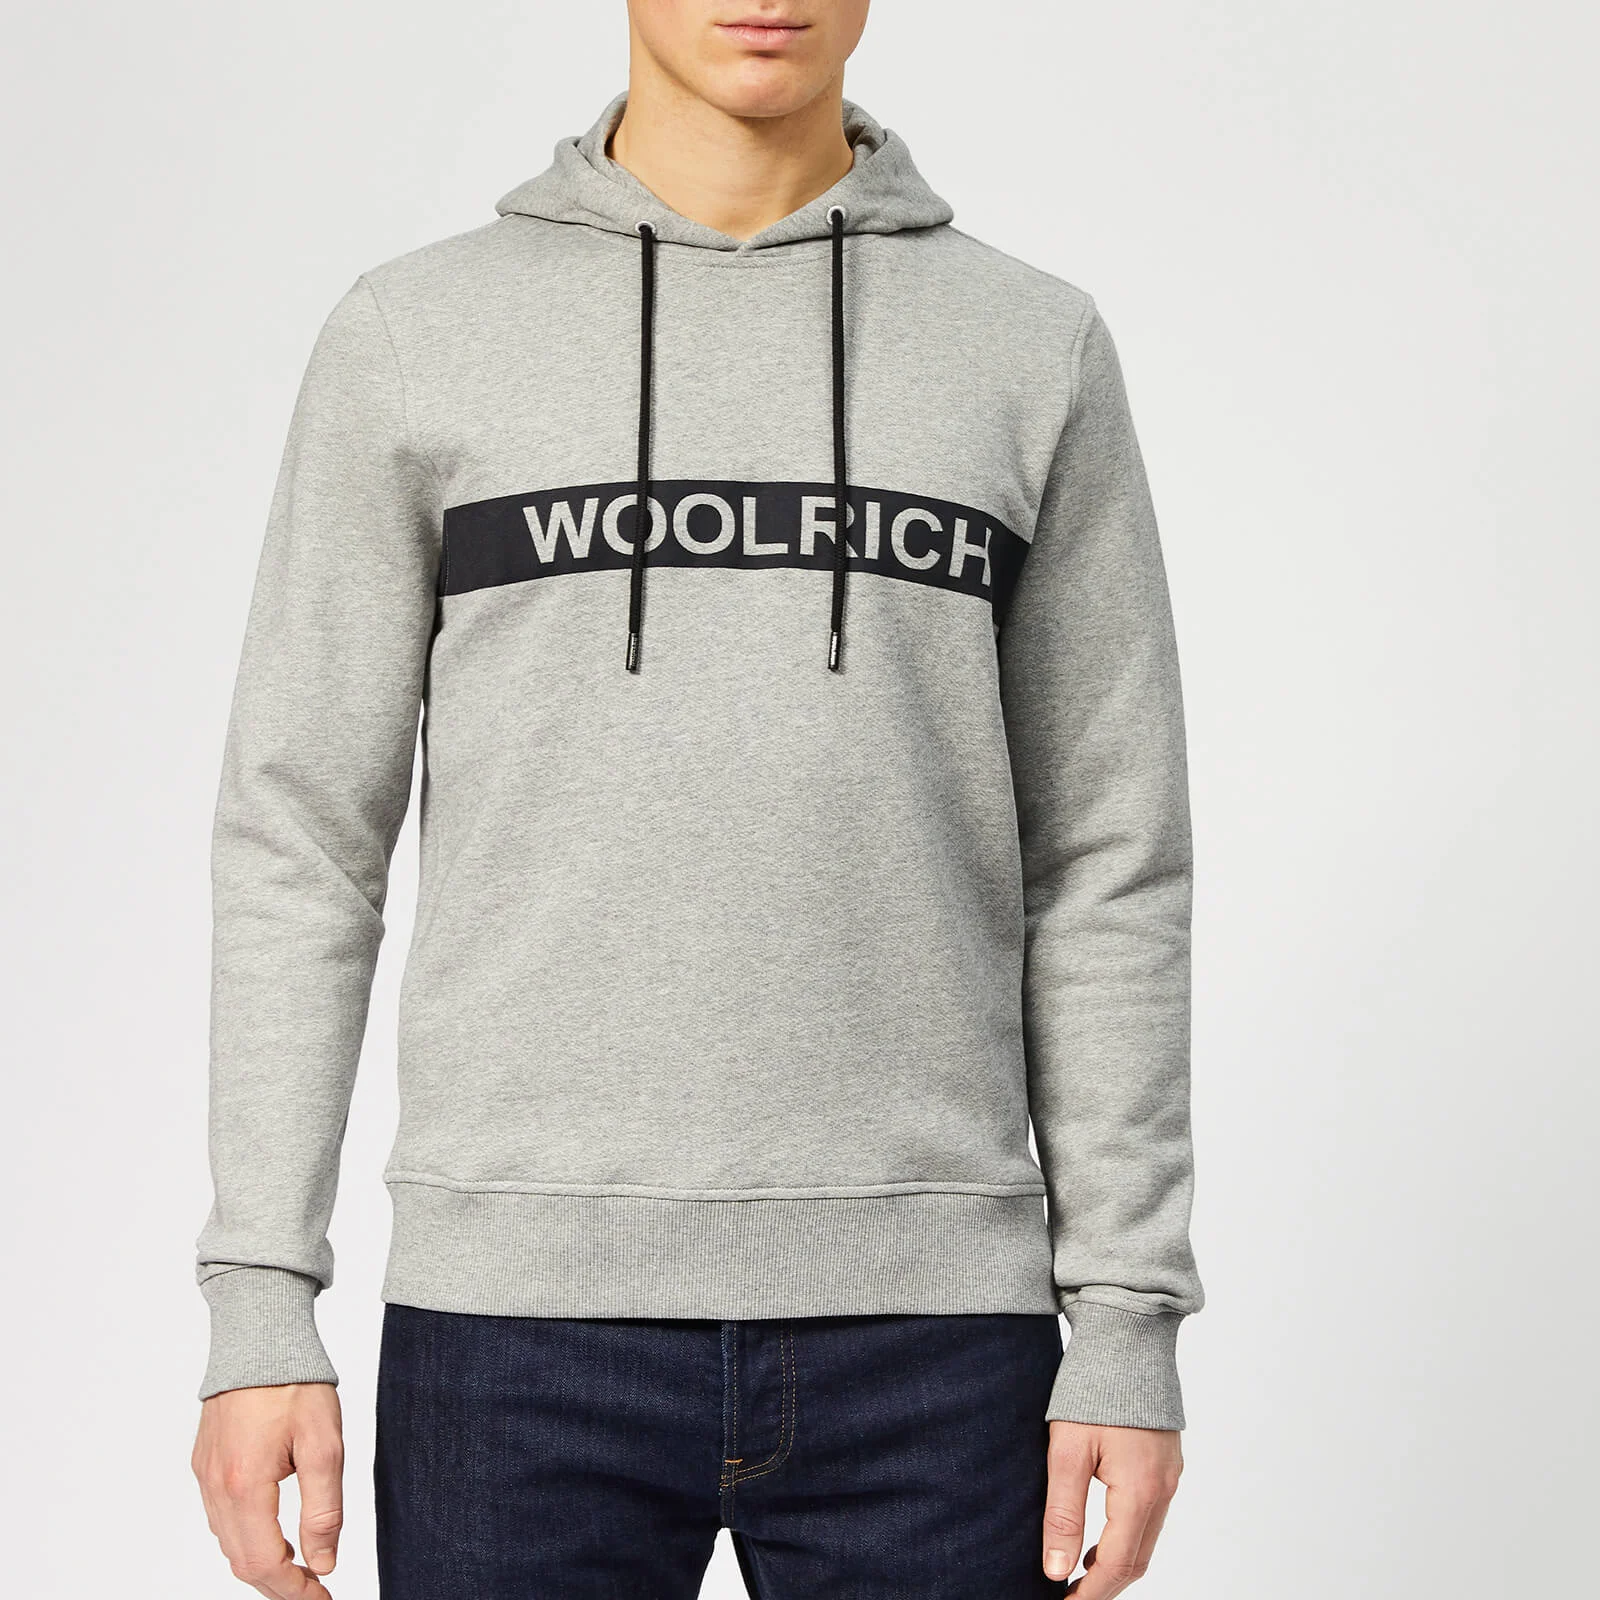 Woolrich Men's Compact Hoodie - Medium Grey Image 1